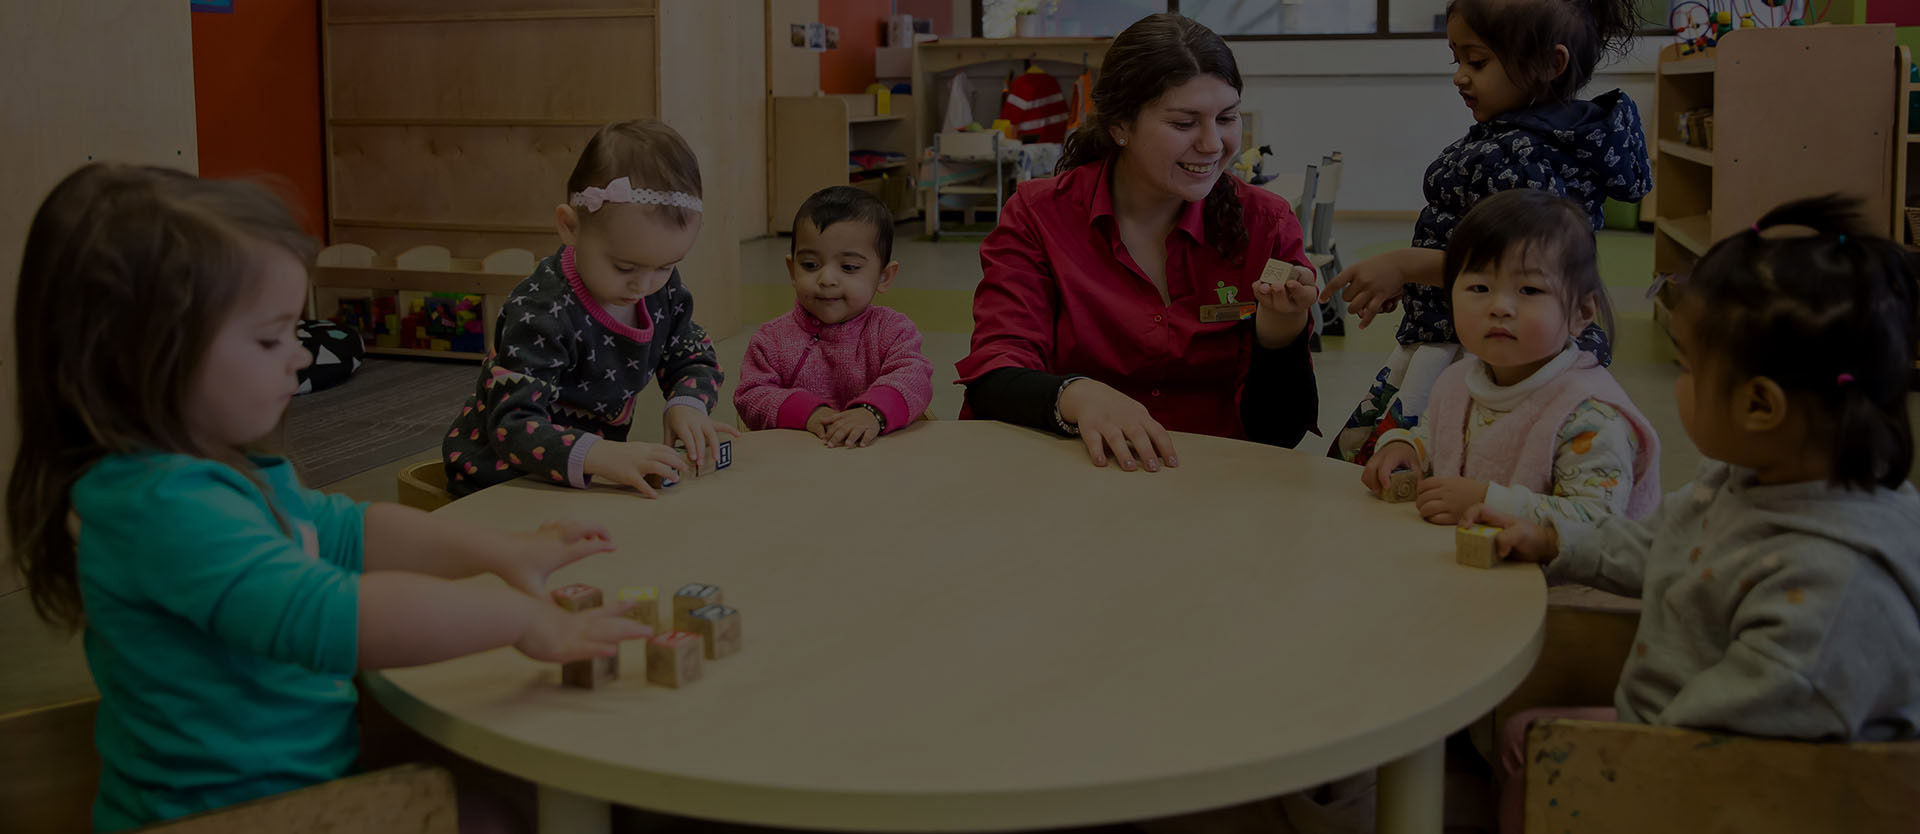 Reggio Emilia Childcare Centres | The Reggio Emilia Approach